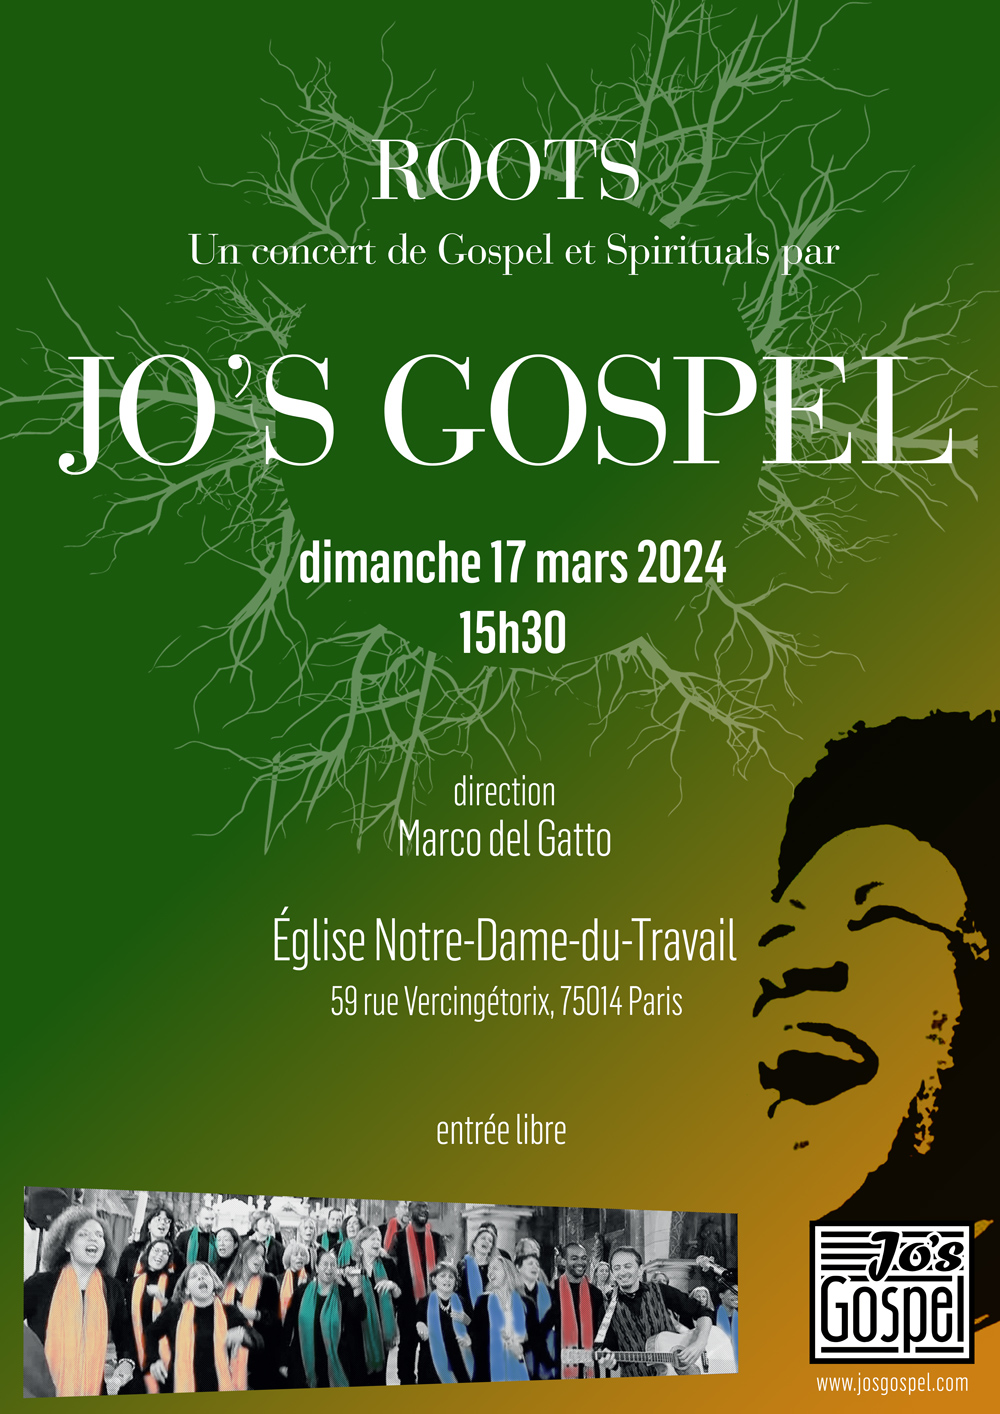 Jo's Gospel concert - Église Notre-Dame-du-Travail